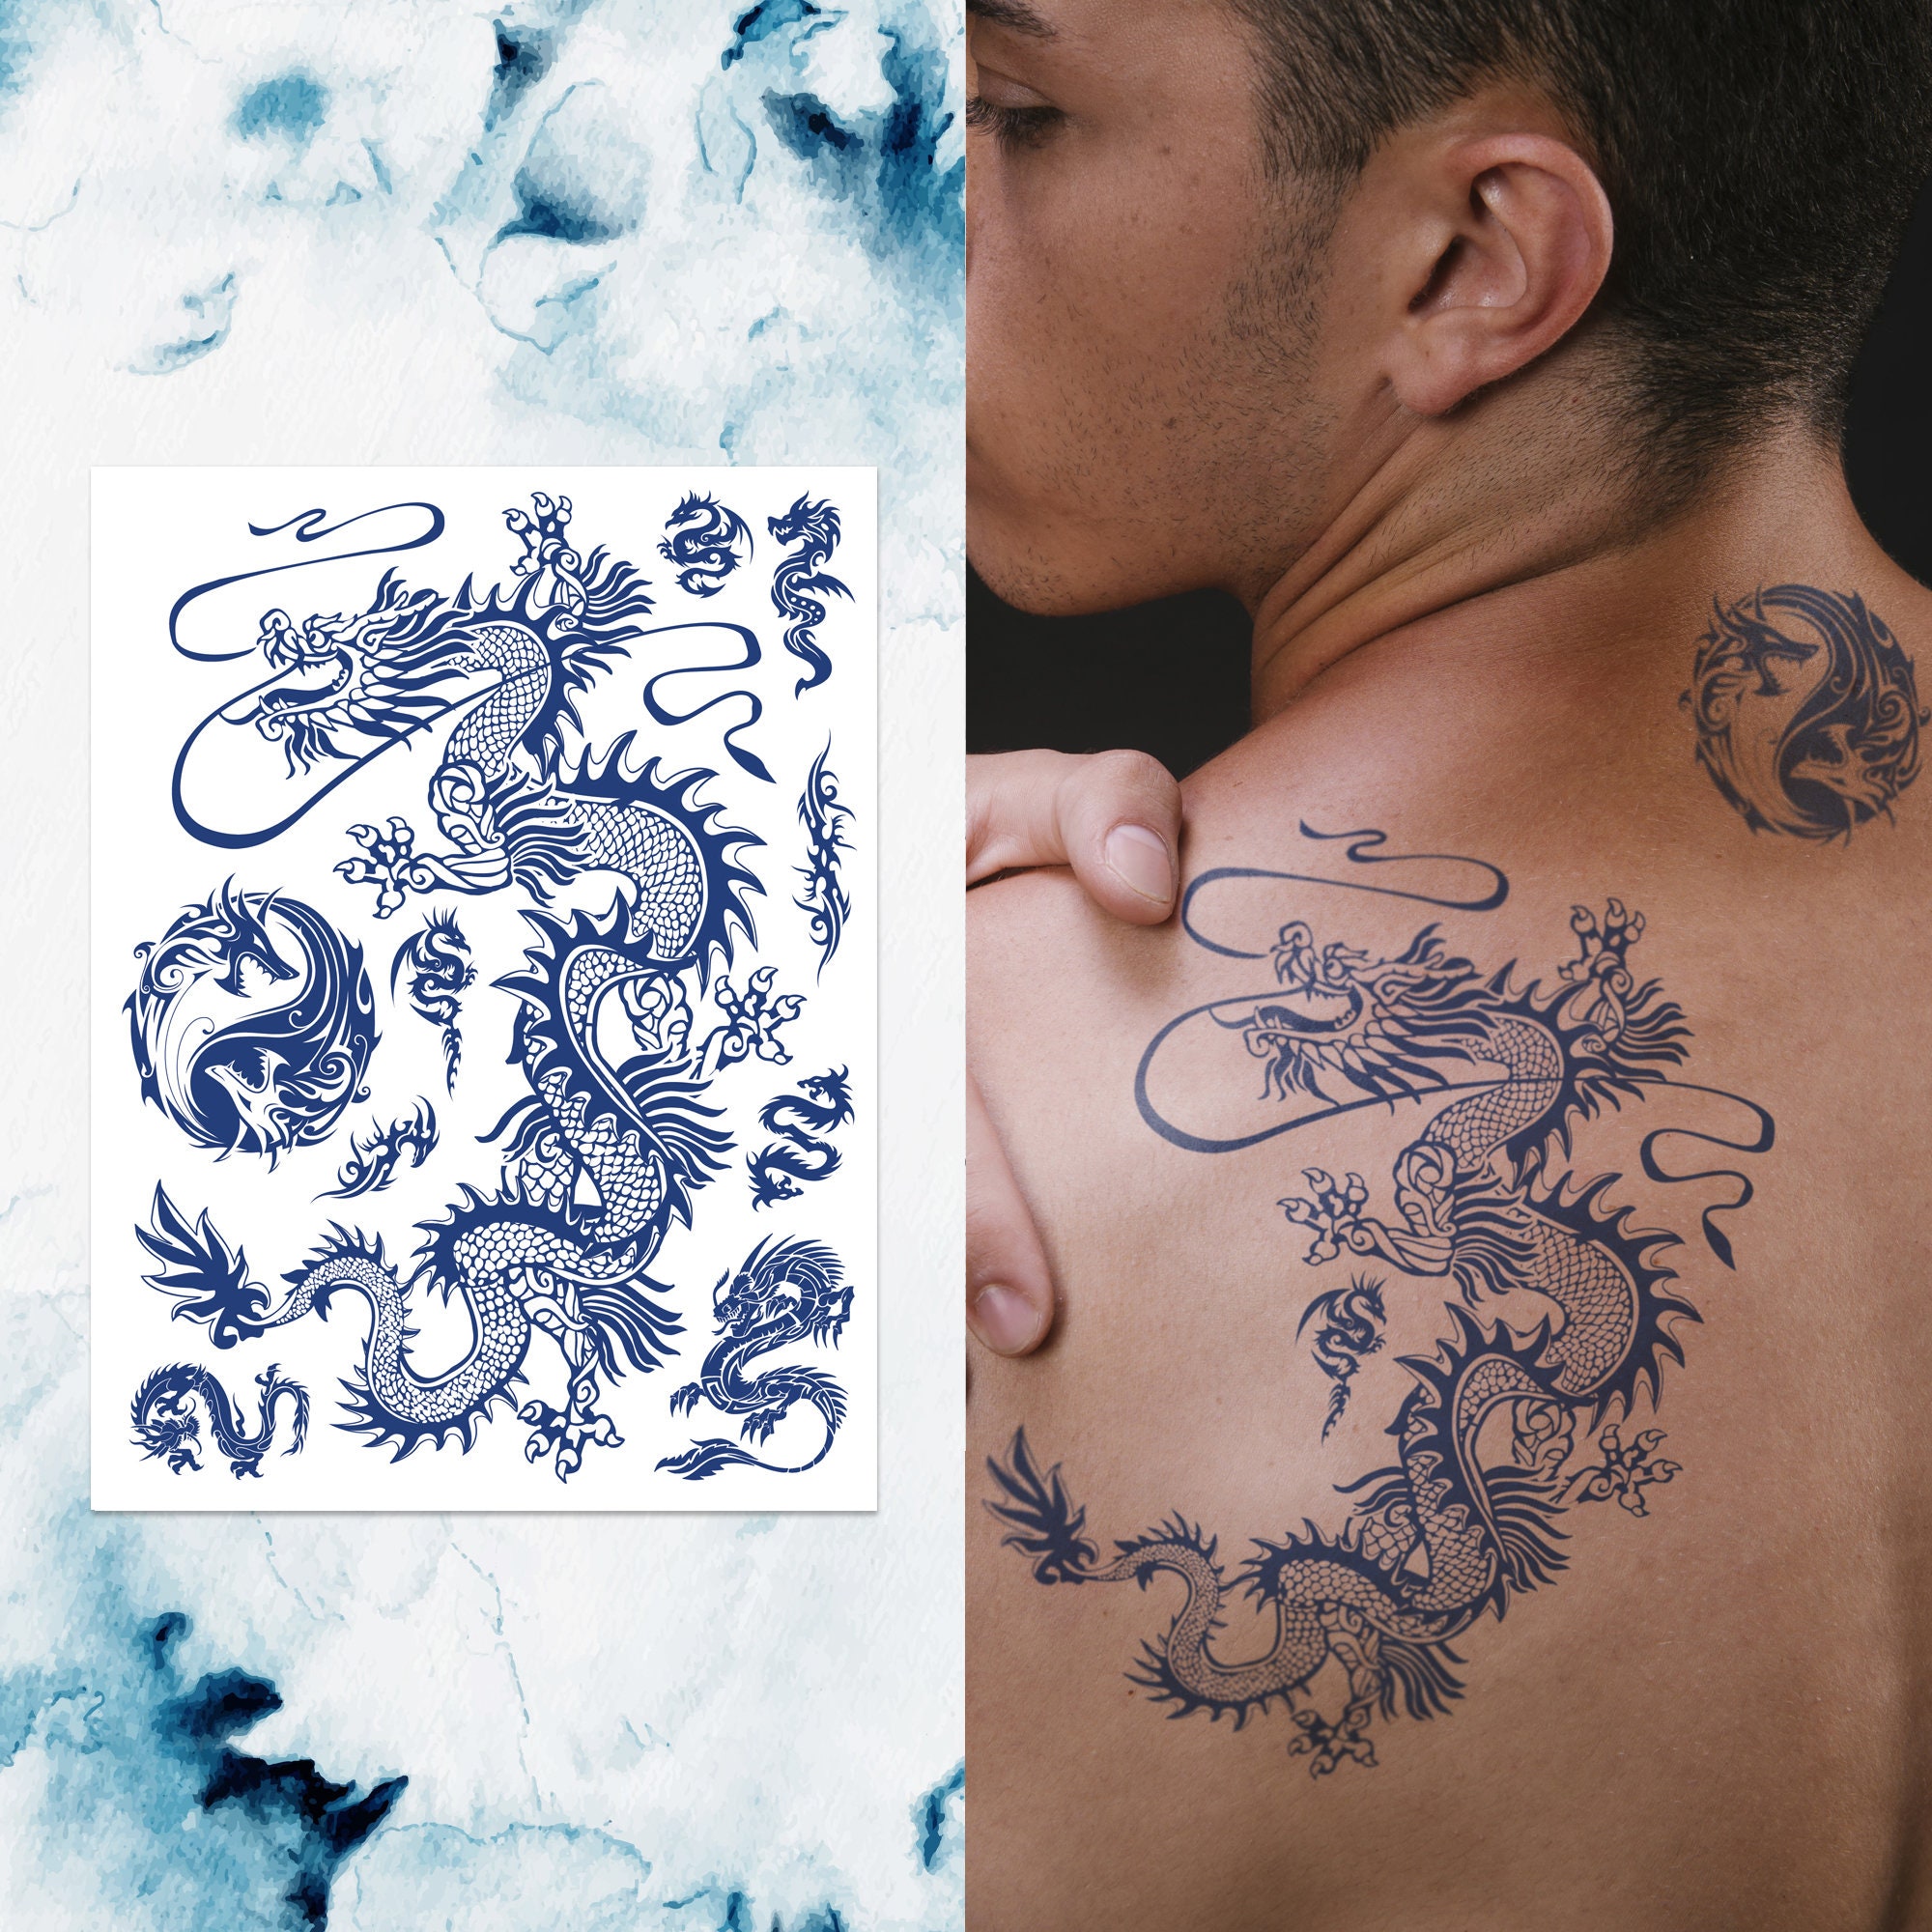 Comdoit Temporary Tattoo Kit Jagua Gel Semi Permanent Tattoo Freehand Ink  DIY Temp Tattoos for Women